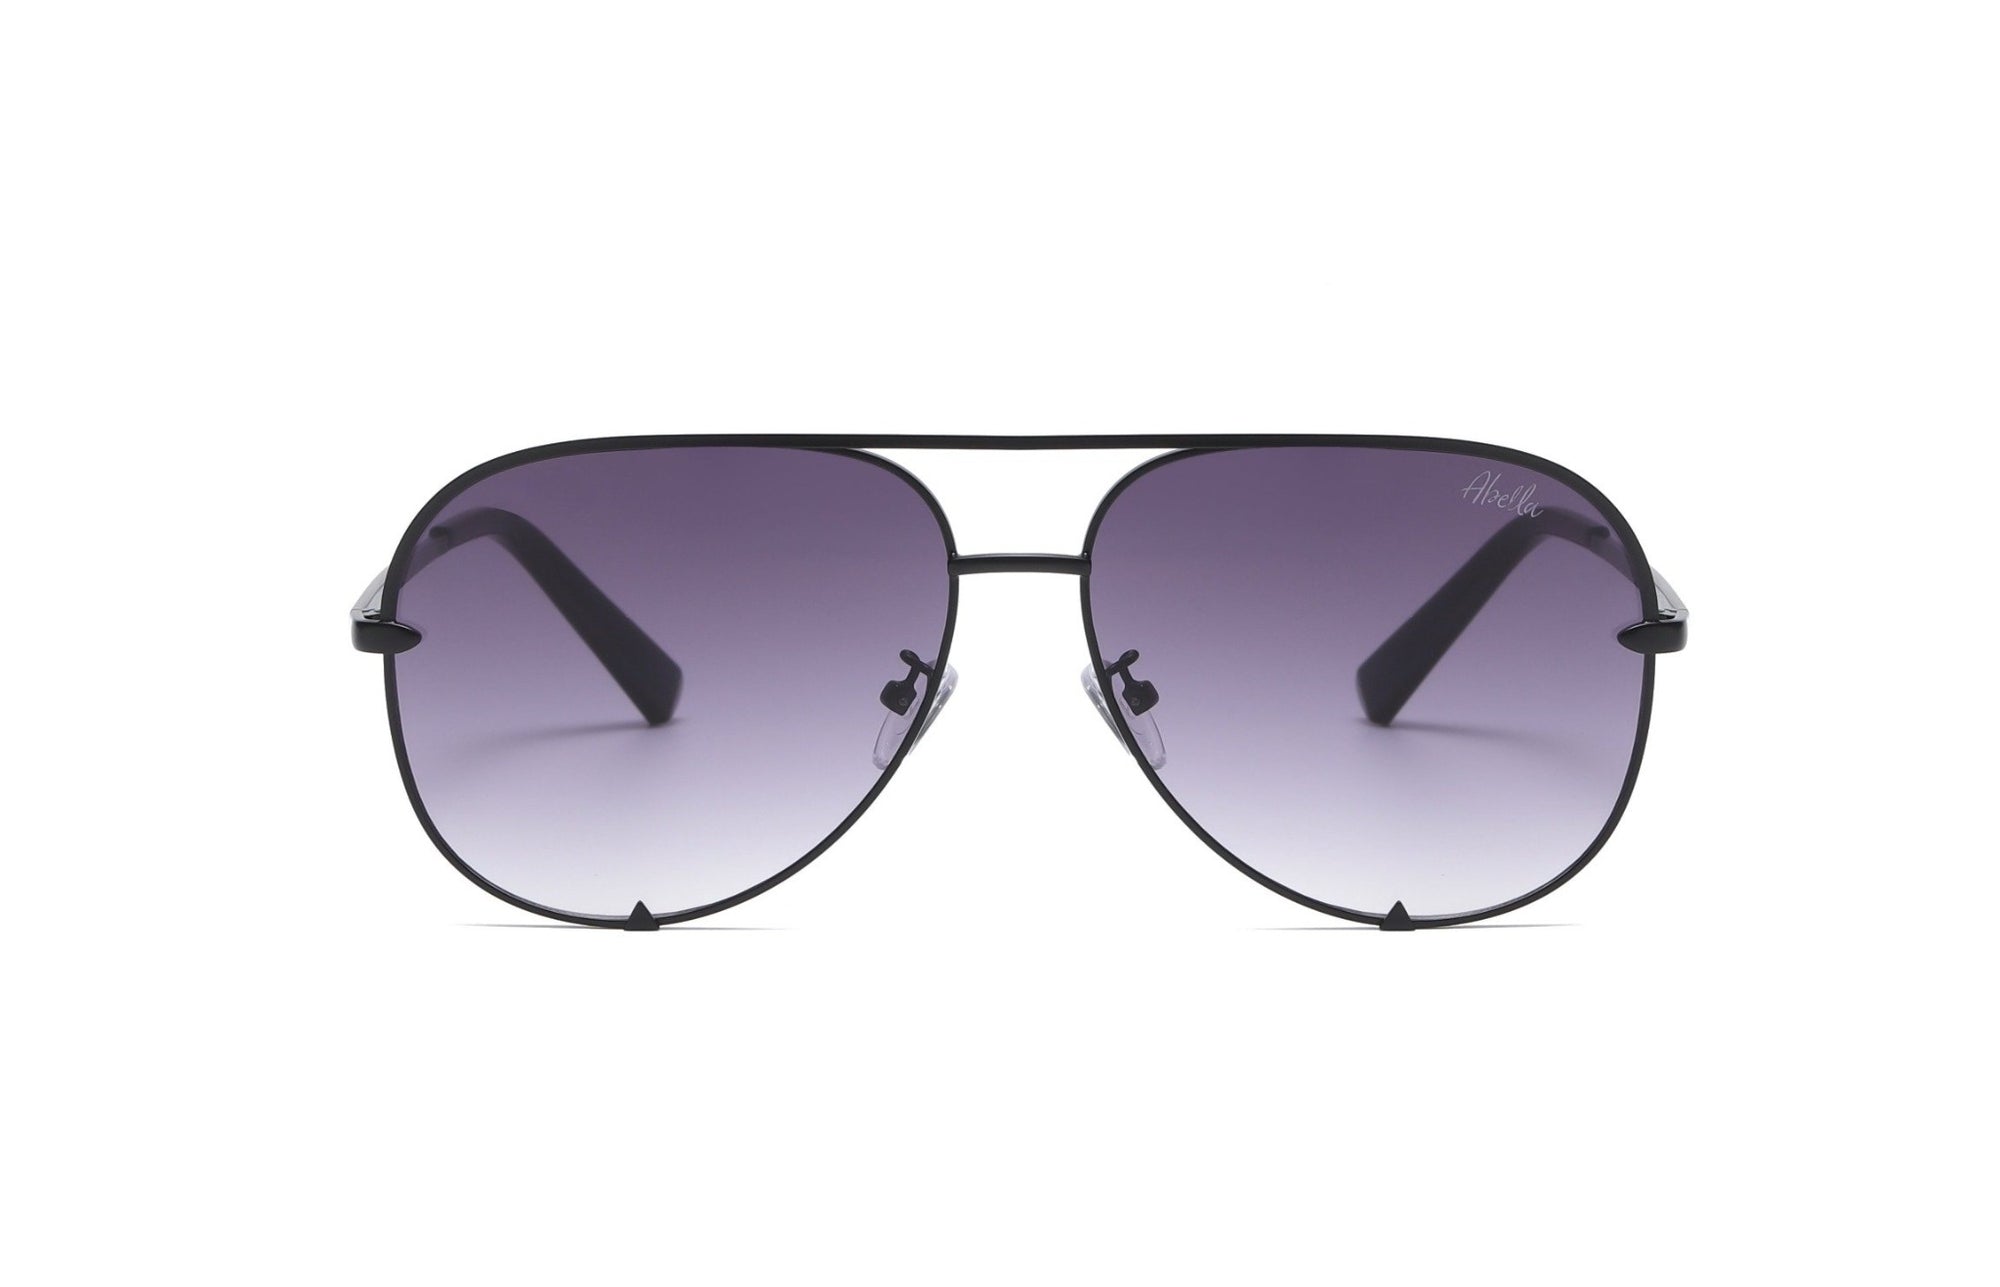 Sims Aviator Sunglasses